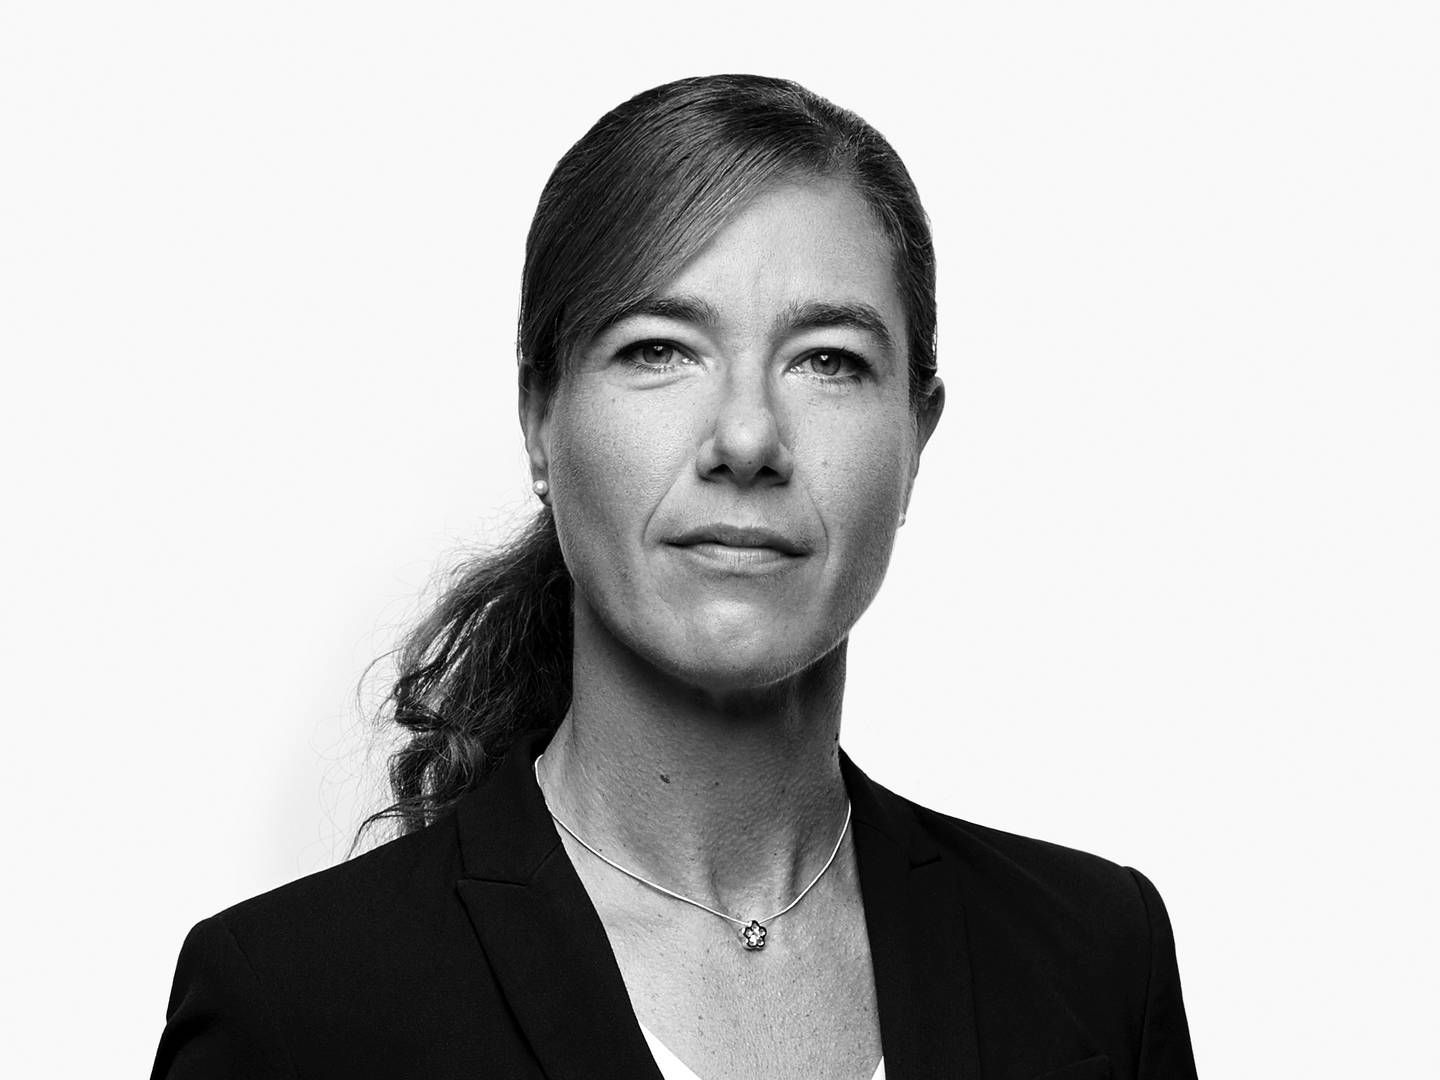 Annika Rutschow er ny advokat hos Andersen Partners. | Foto: Andersen Partners PR